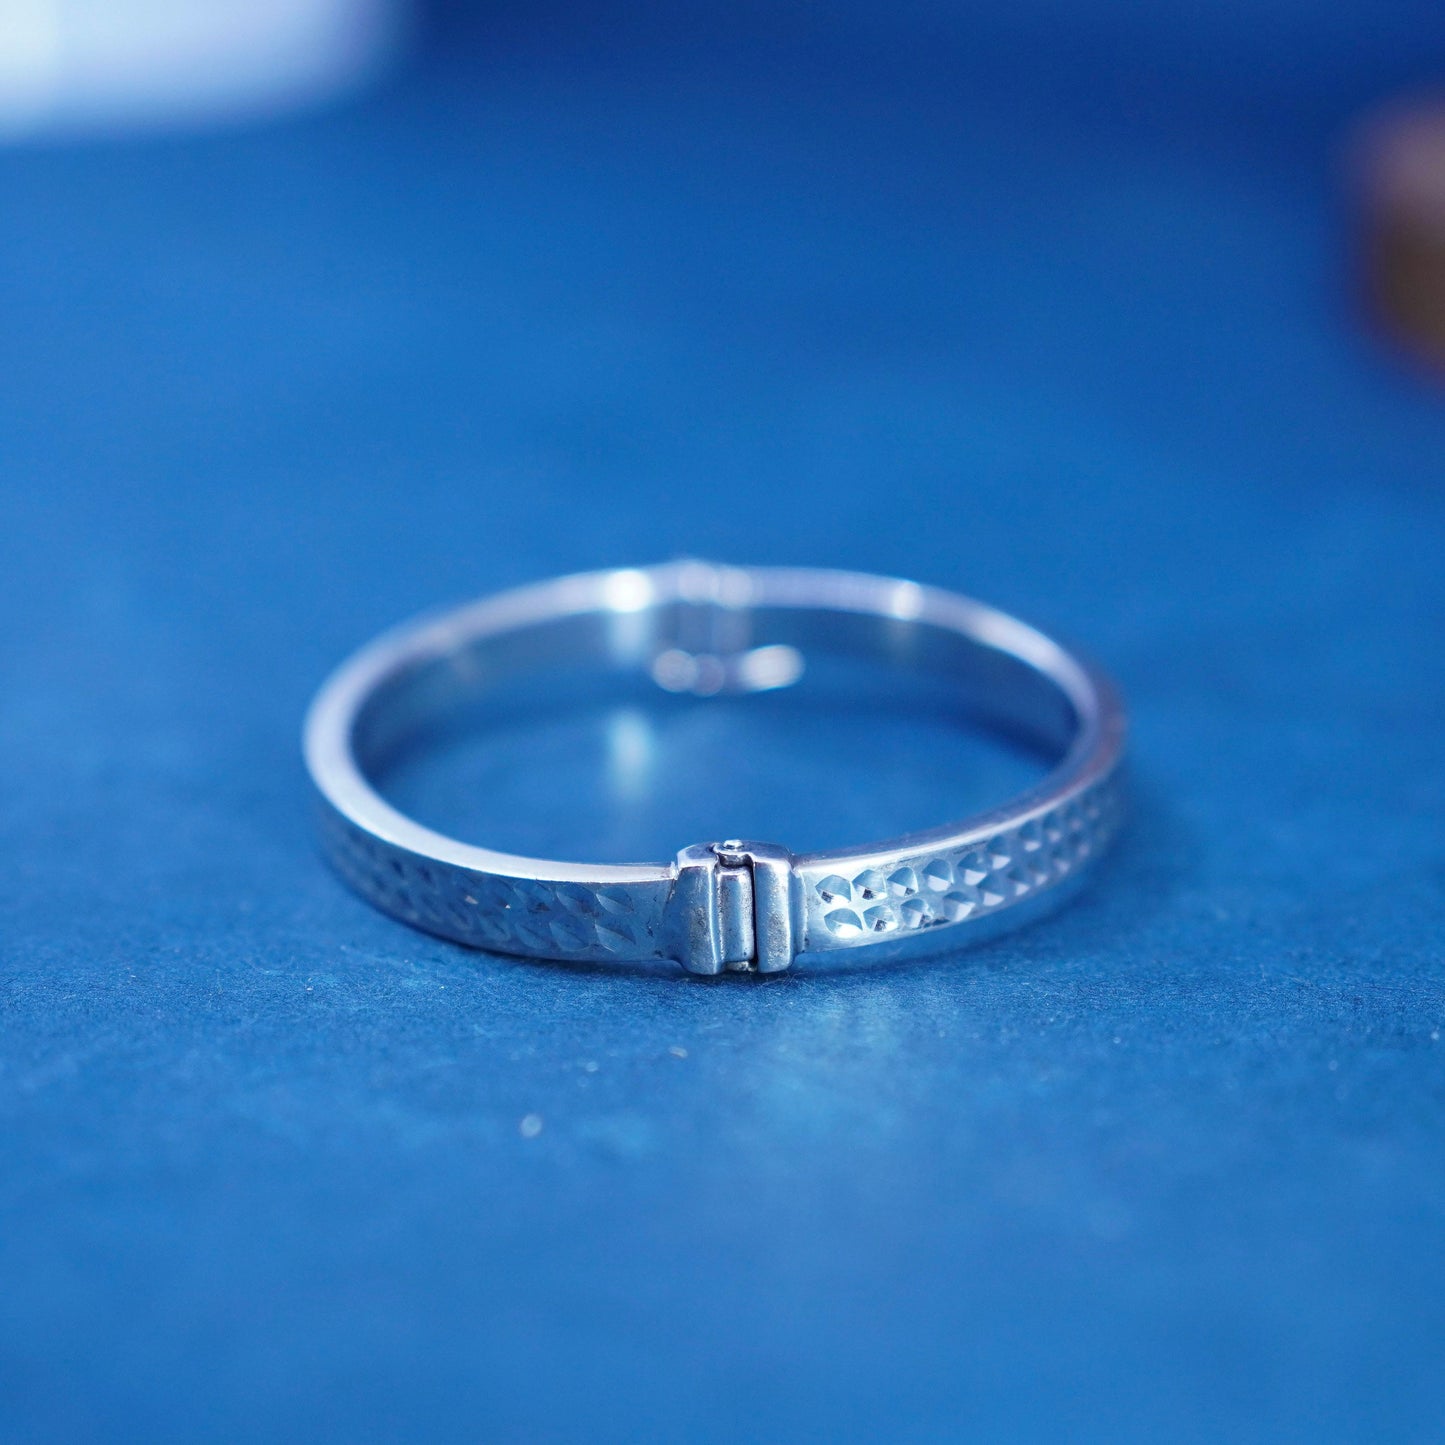 6.5”, VTG Italy sterling silver handmade bracelet, 925 textured hinged bangle